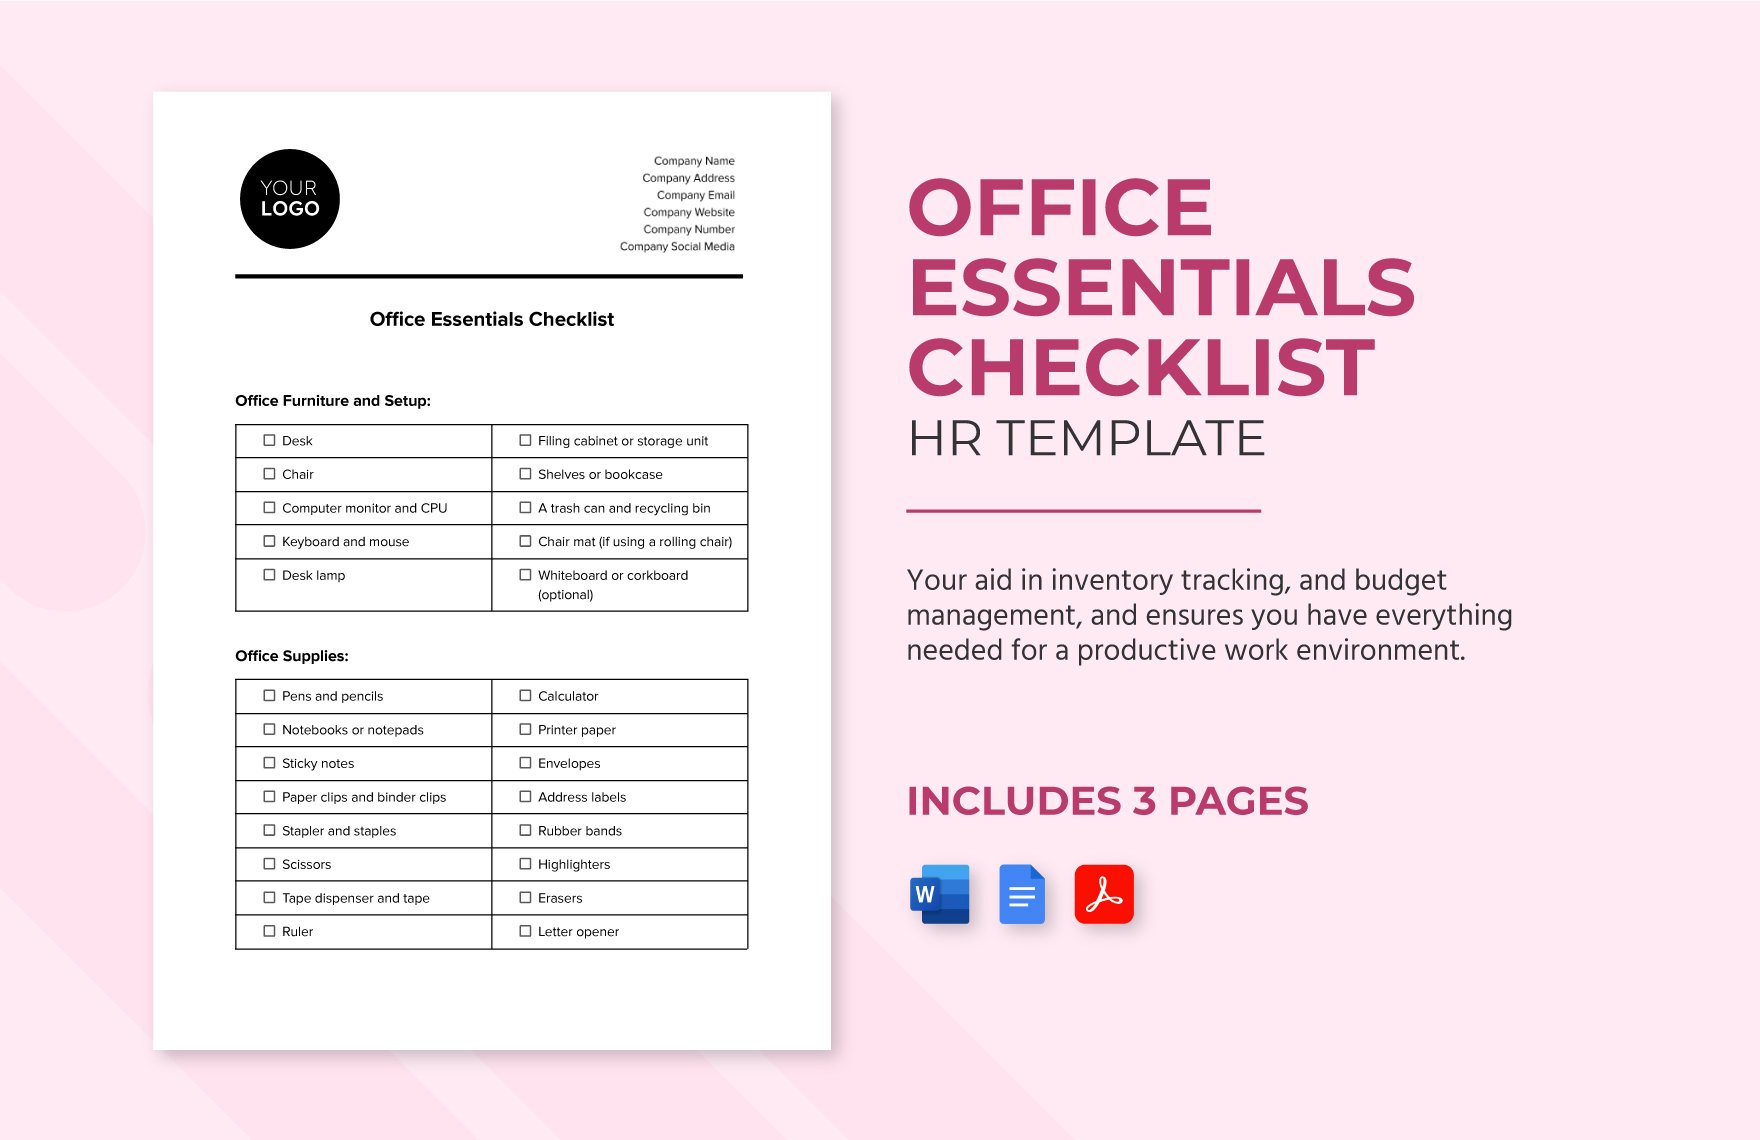 Office Essentials Checklist HR Template in Word, Google Docs, PDF